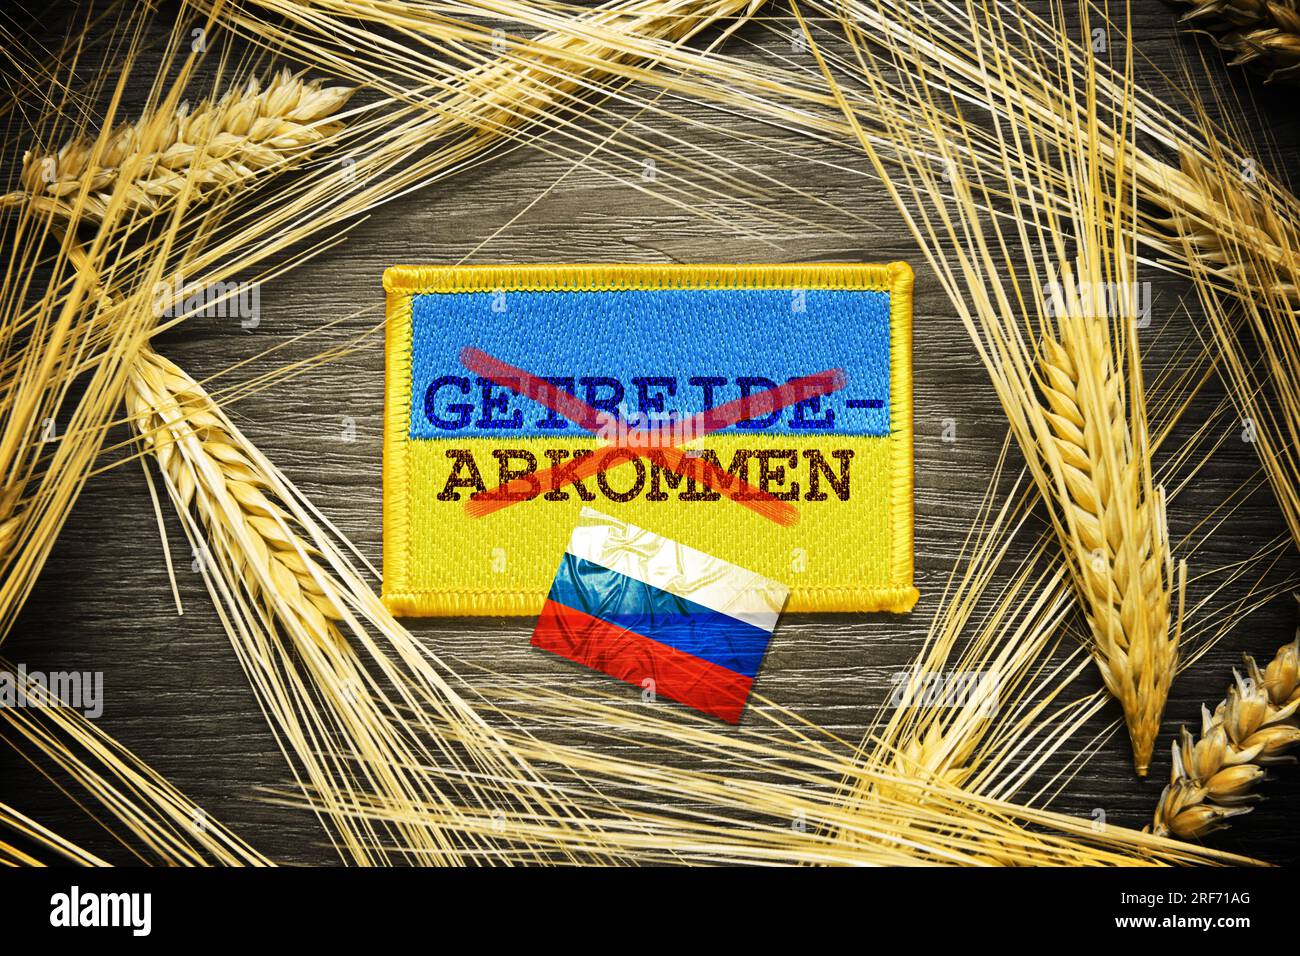 FOTOMONTAGE, Die Fahne der Ukraine mit durchgestrichener Aufschrift Getreideabkommen und russische Fahne Foto Stock